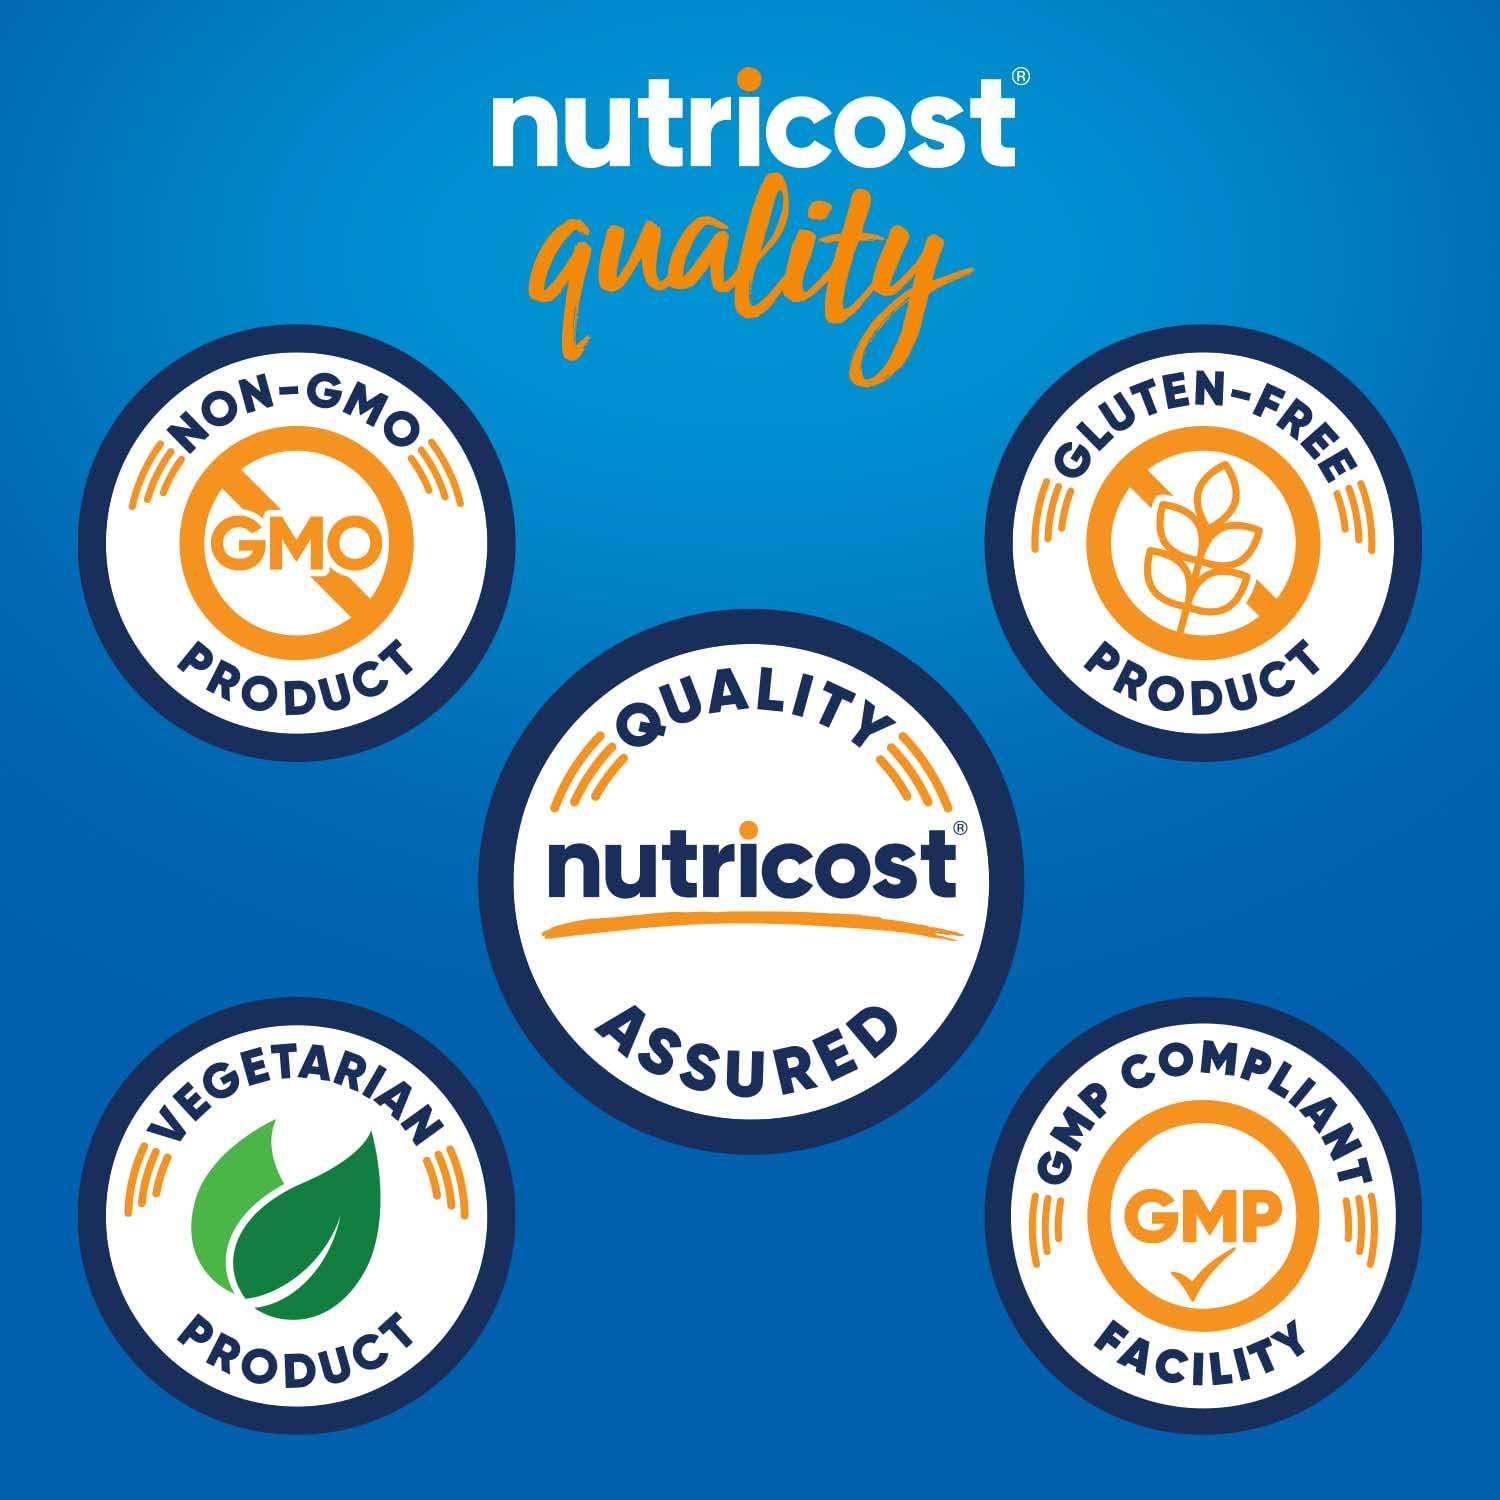 Nutricost CoQ10 (120 Viên) - Cải Thiện Tim Mạch và Sức Khỏe Tập Luyện